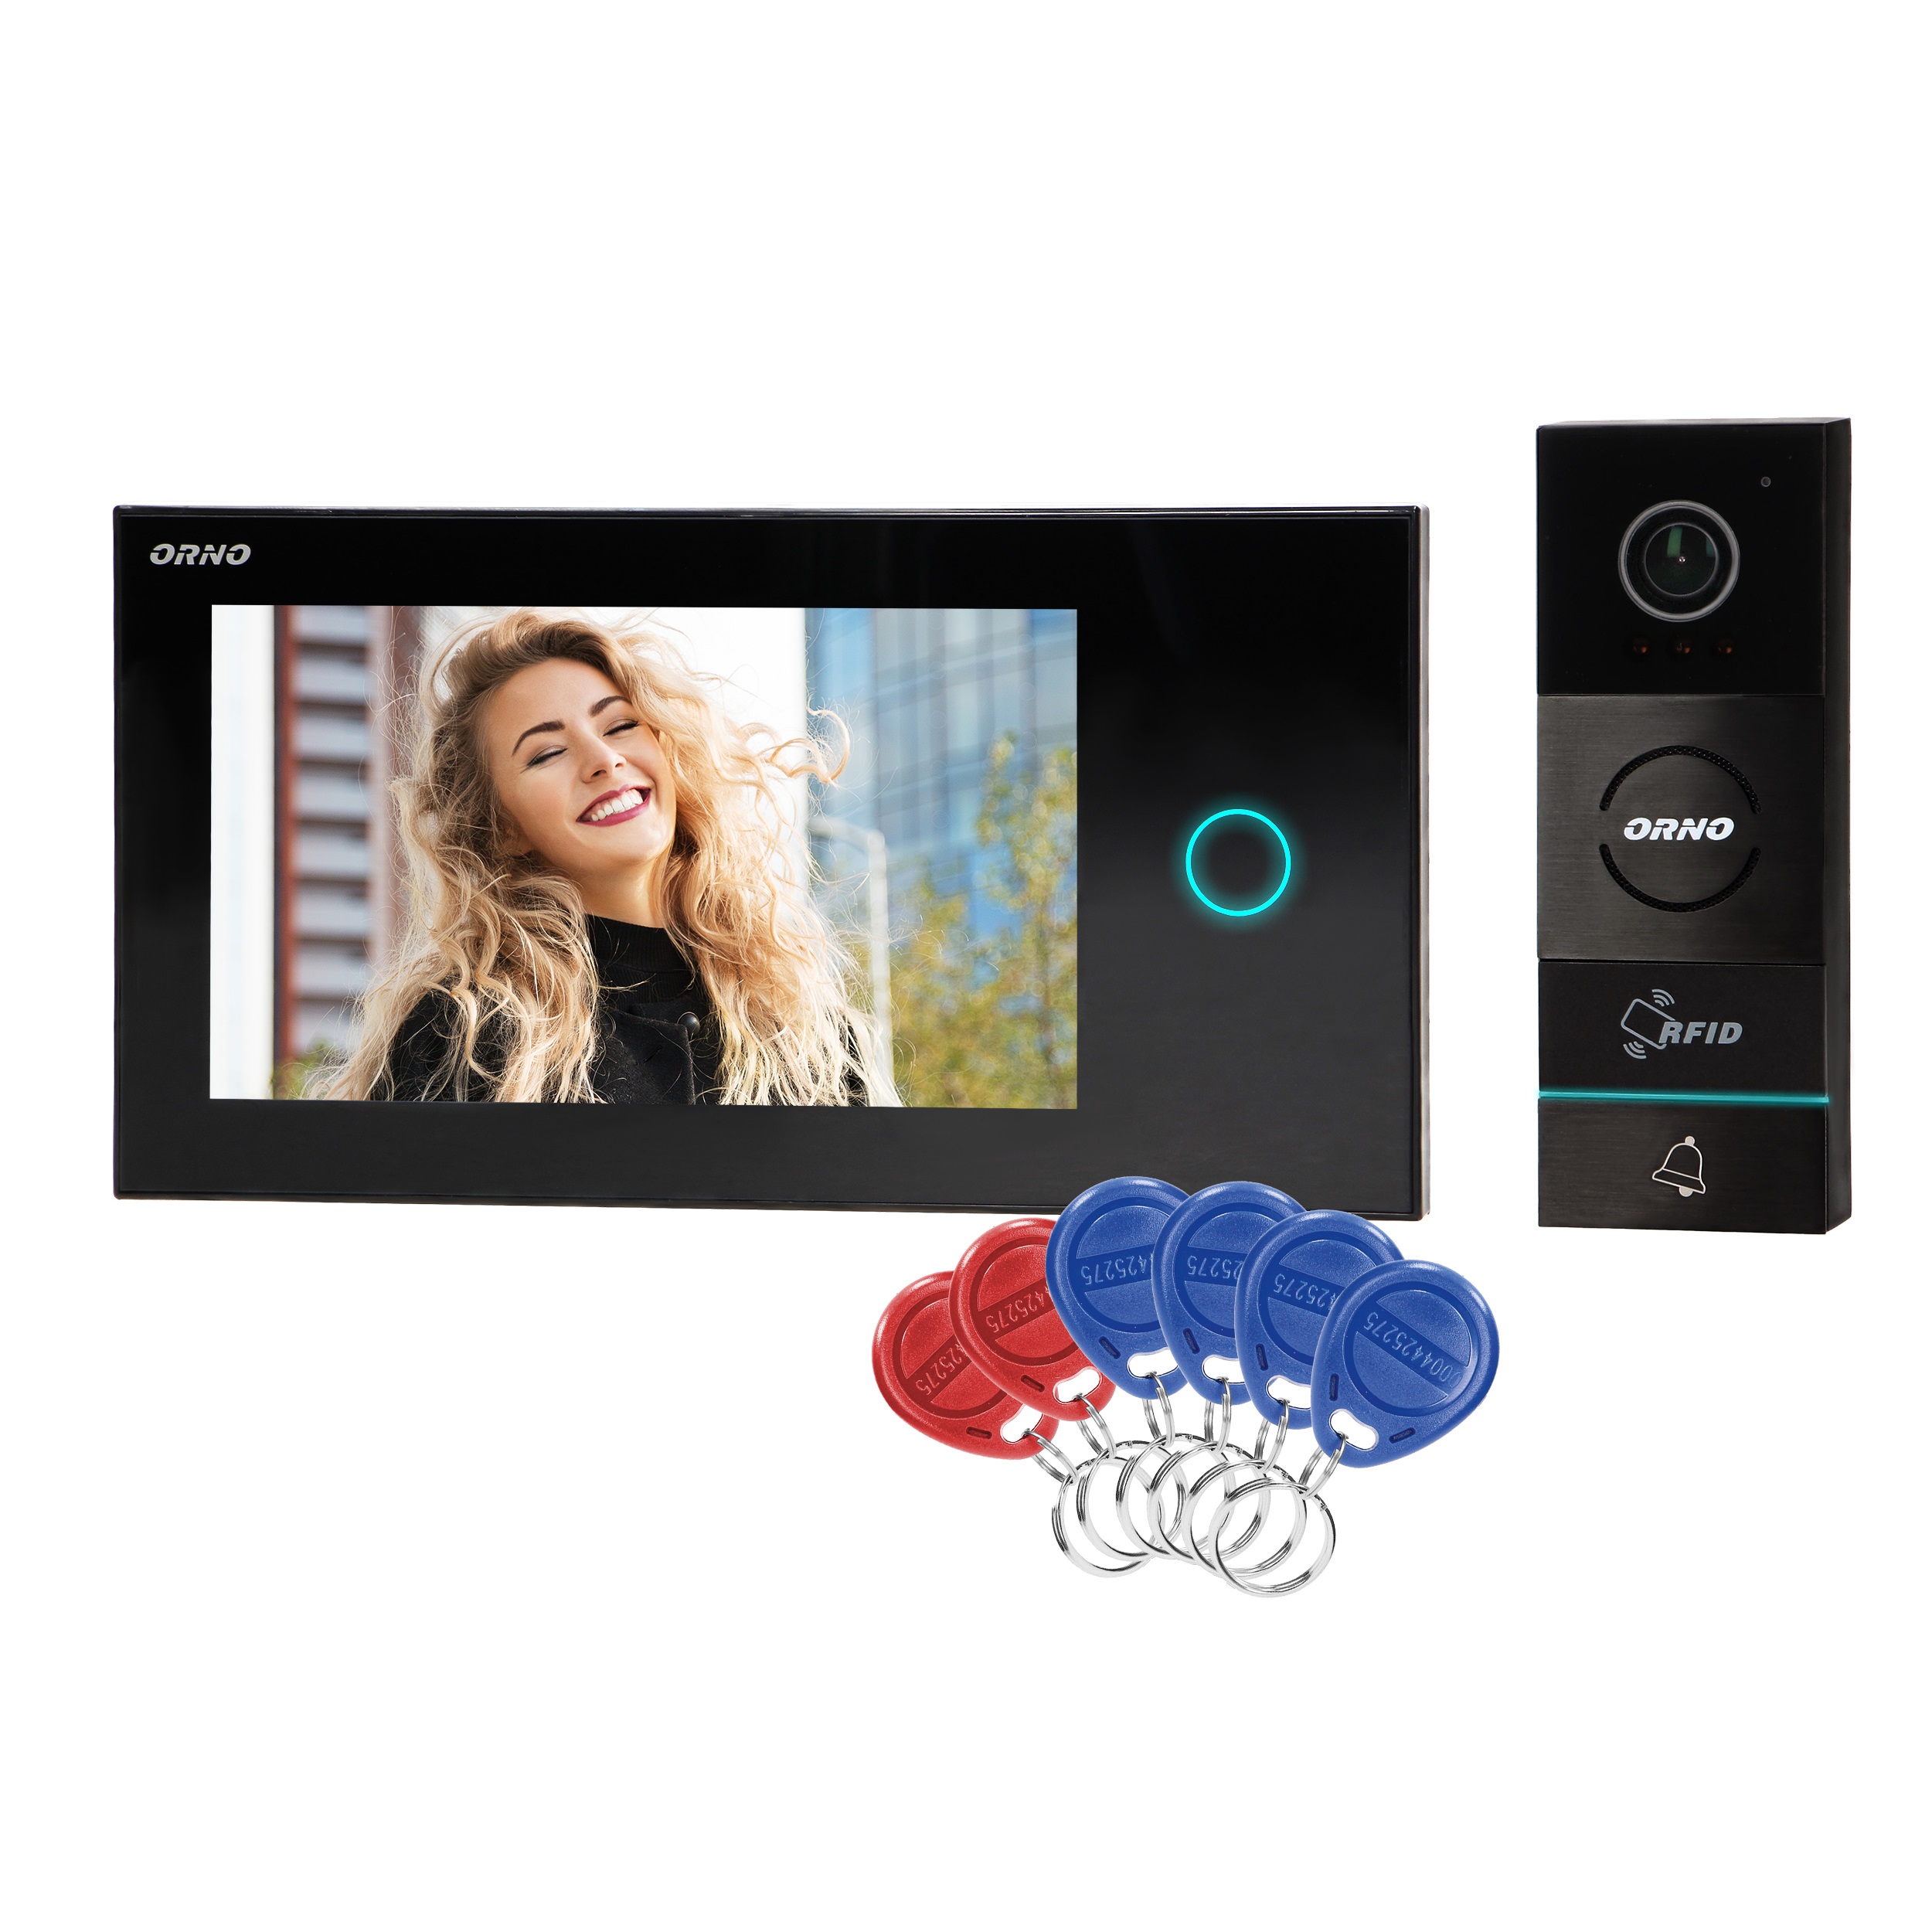 Videointerfon pentru o familie APPOS ORNO OR-VID-WI-1068/B, aplicatie mobil, color, monitor ultra-plat LCD 7" tactil, control automat al portilor, cititor carduri SD, deschidere cu ajutorul etichetelor de proximitate, negru